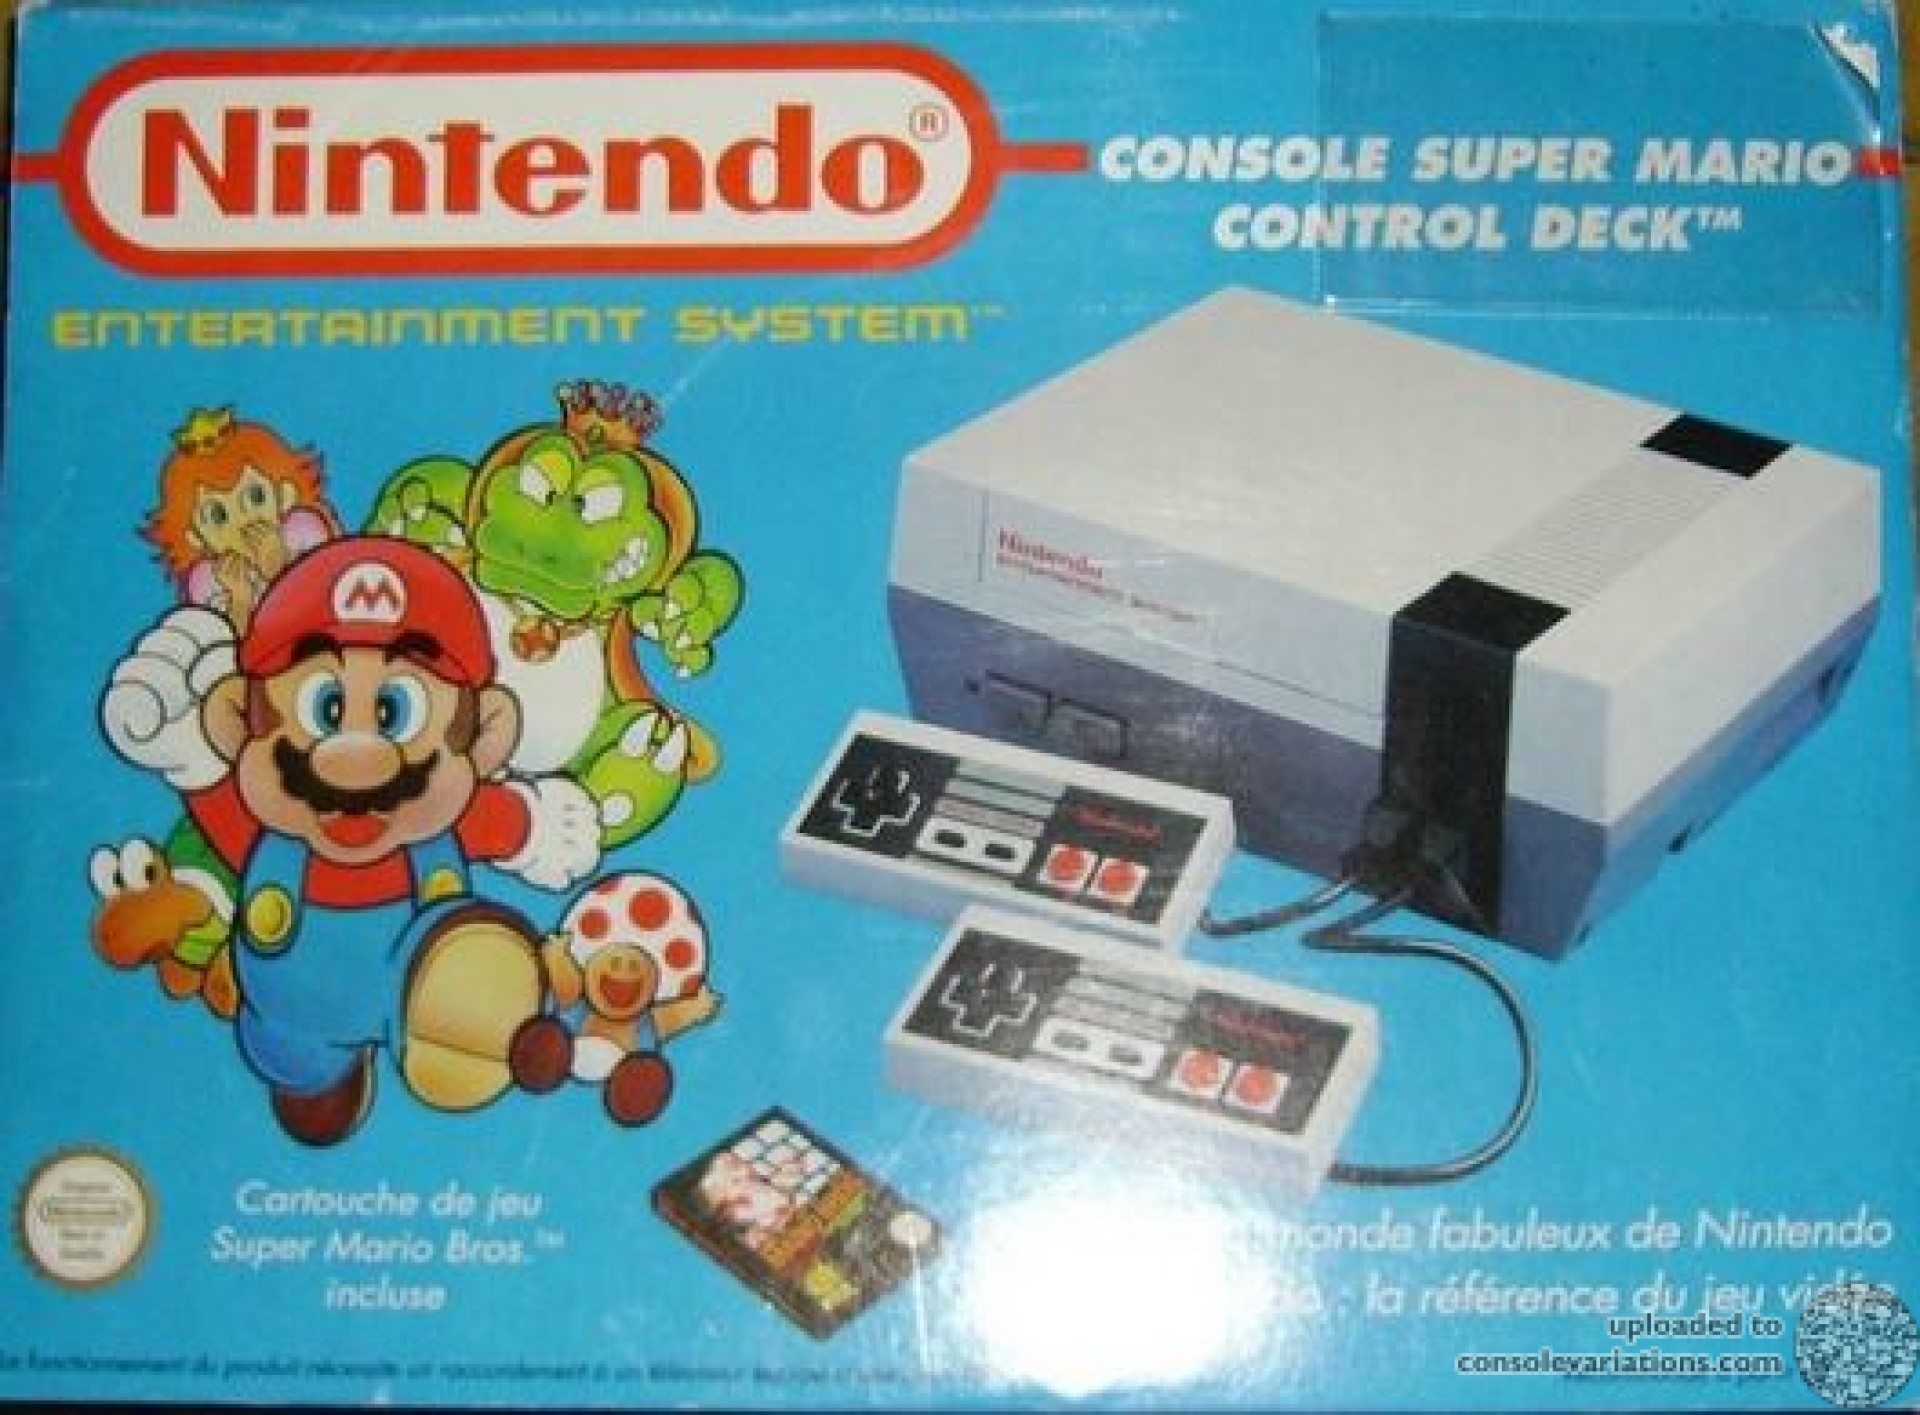 French Nintendo NES commercial ads were original